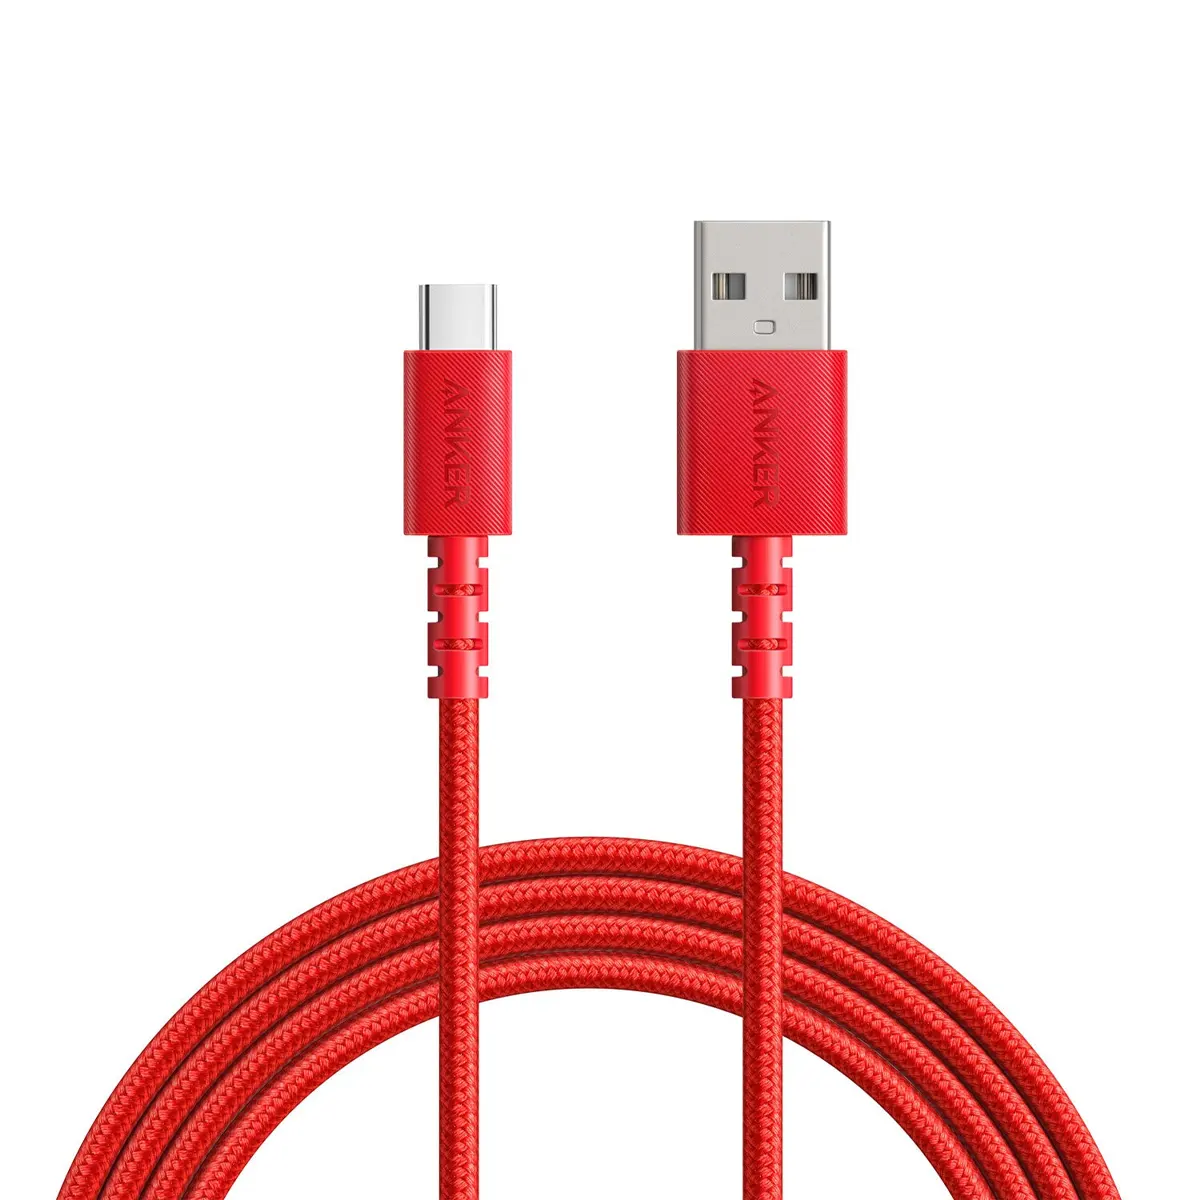 کابل USB-C انکر 0.9 متر مدل Anker PowerLine Select Plus 0.9m USB-C Cable (A8022) رنگ قرمز